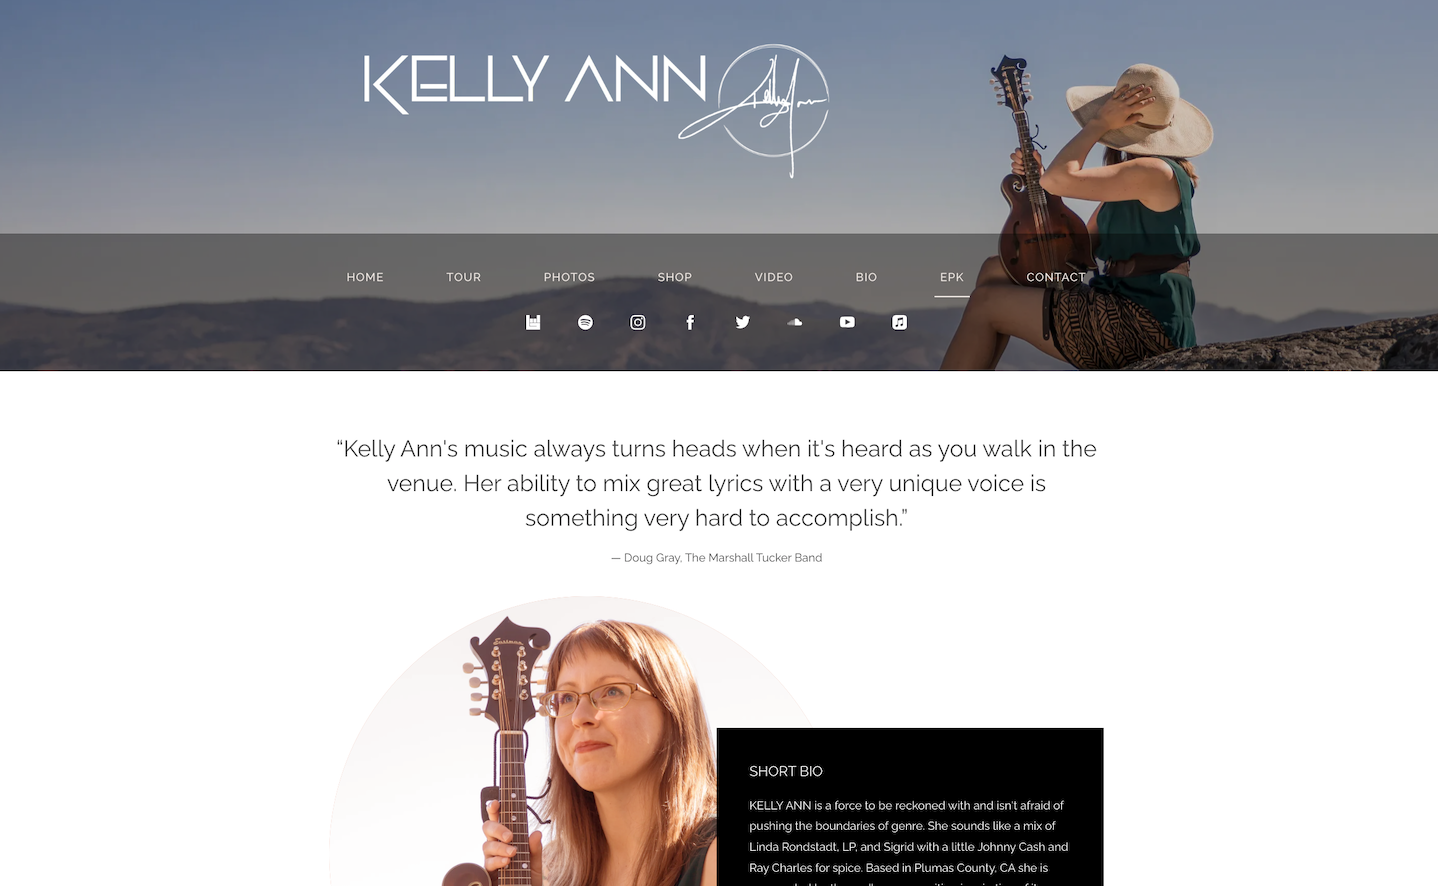 How to build a singer website: screenshot of artist Kelly Ann's music website